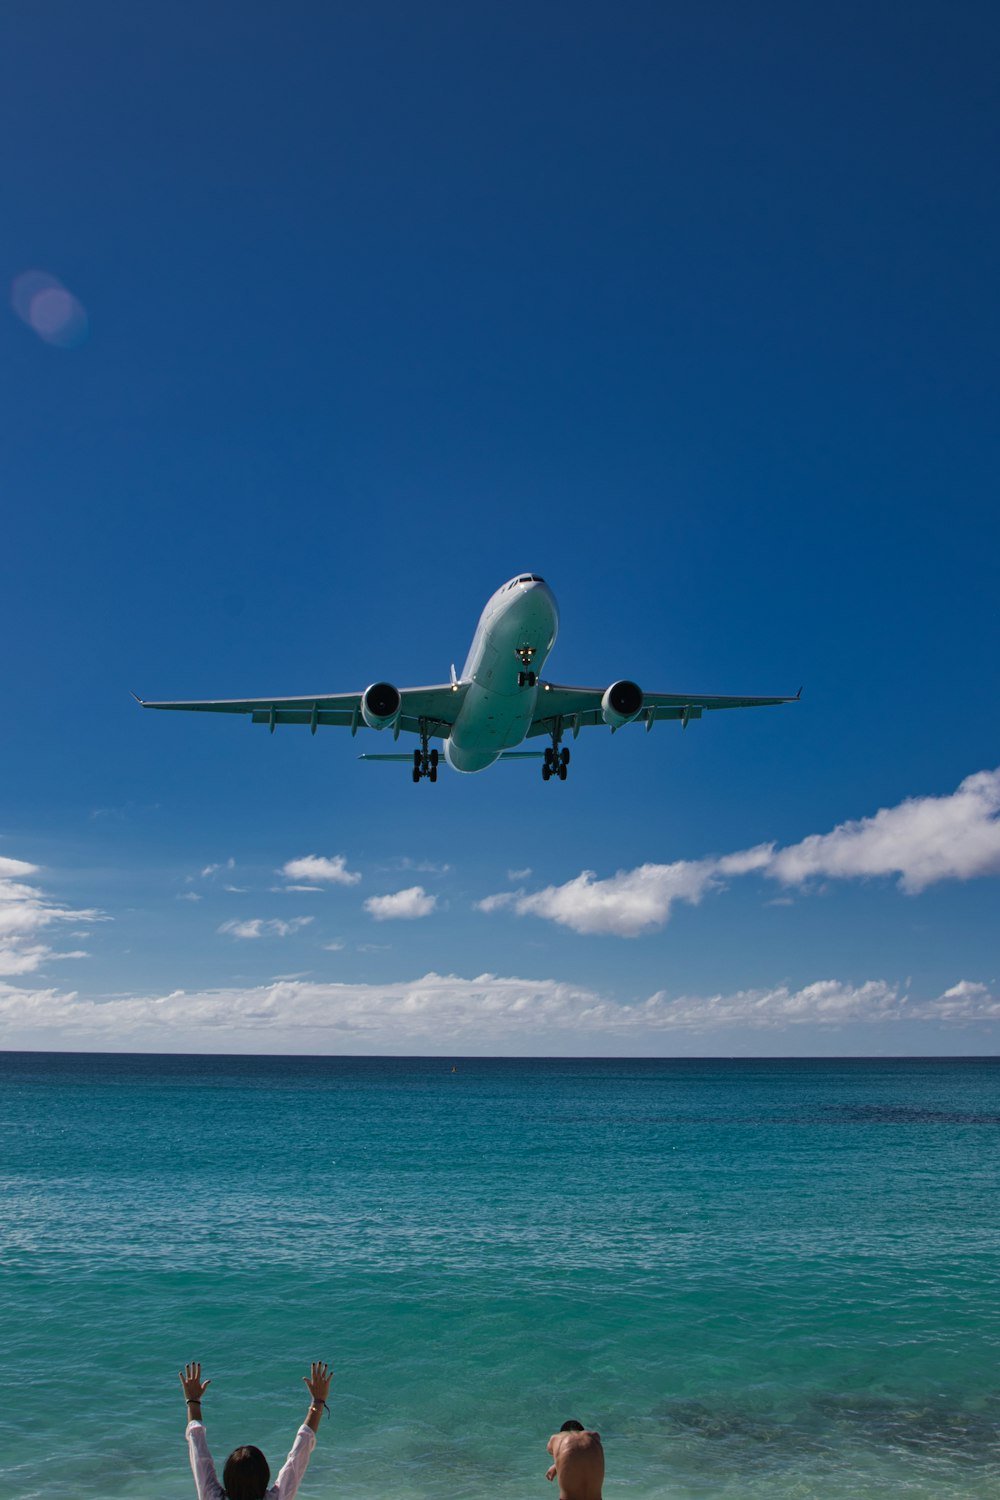 a large jetliner flying over a blue ocean